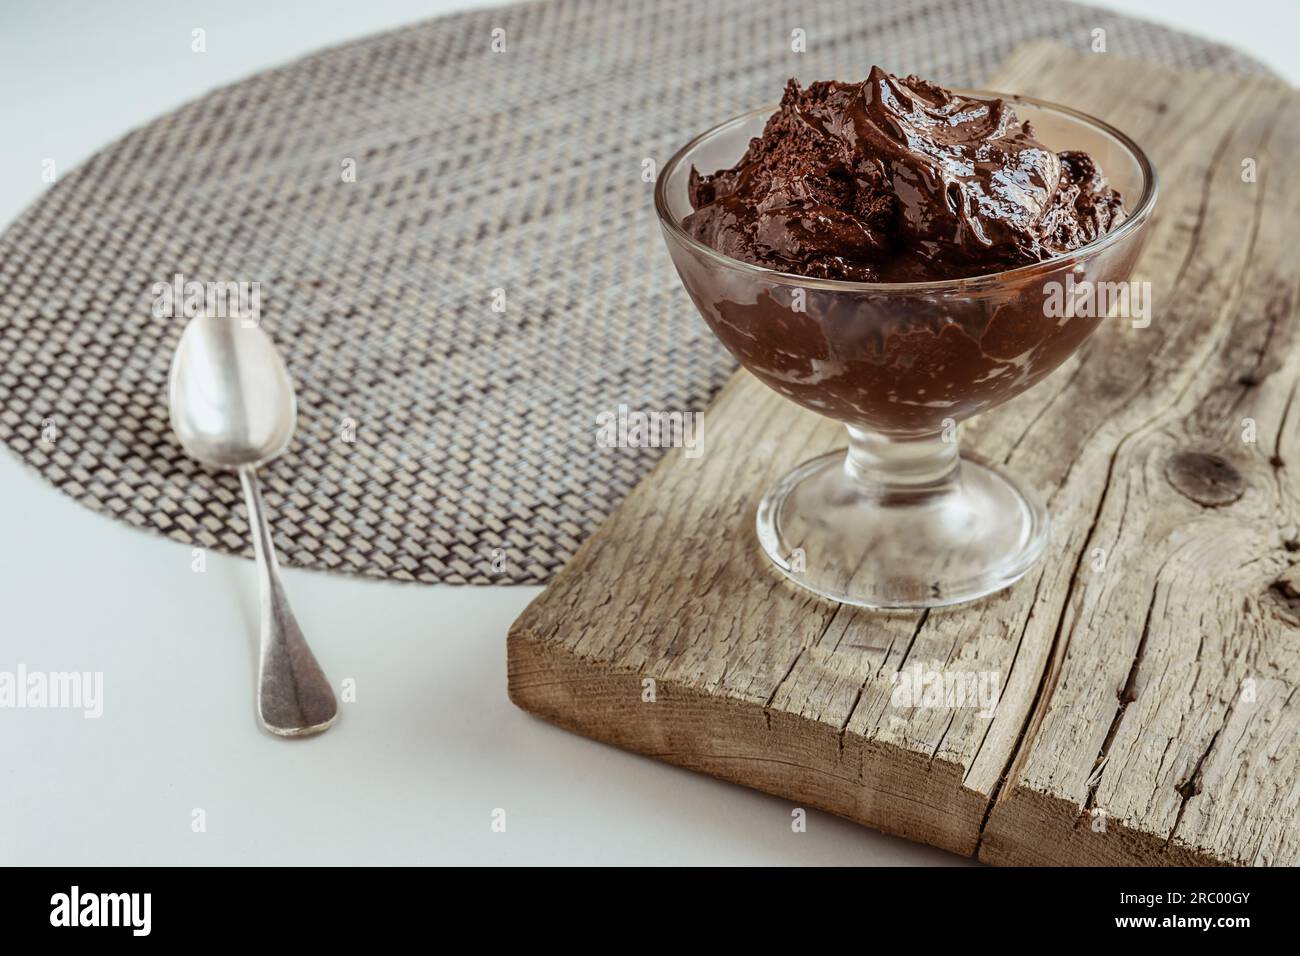 Eine transparente Schüssel mit Schokoladenmousse, traditionelles französisches Dessert auf einem Holzbrett Stockfoto